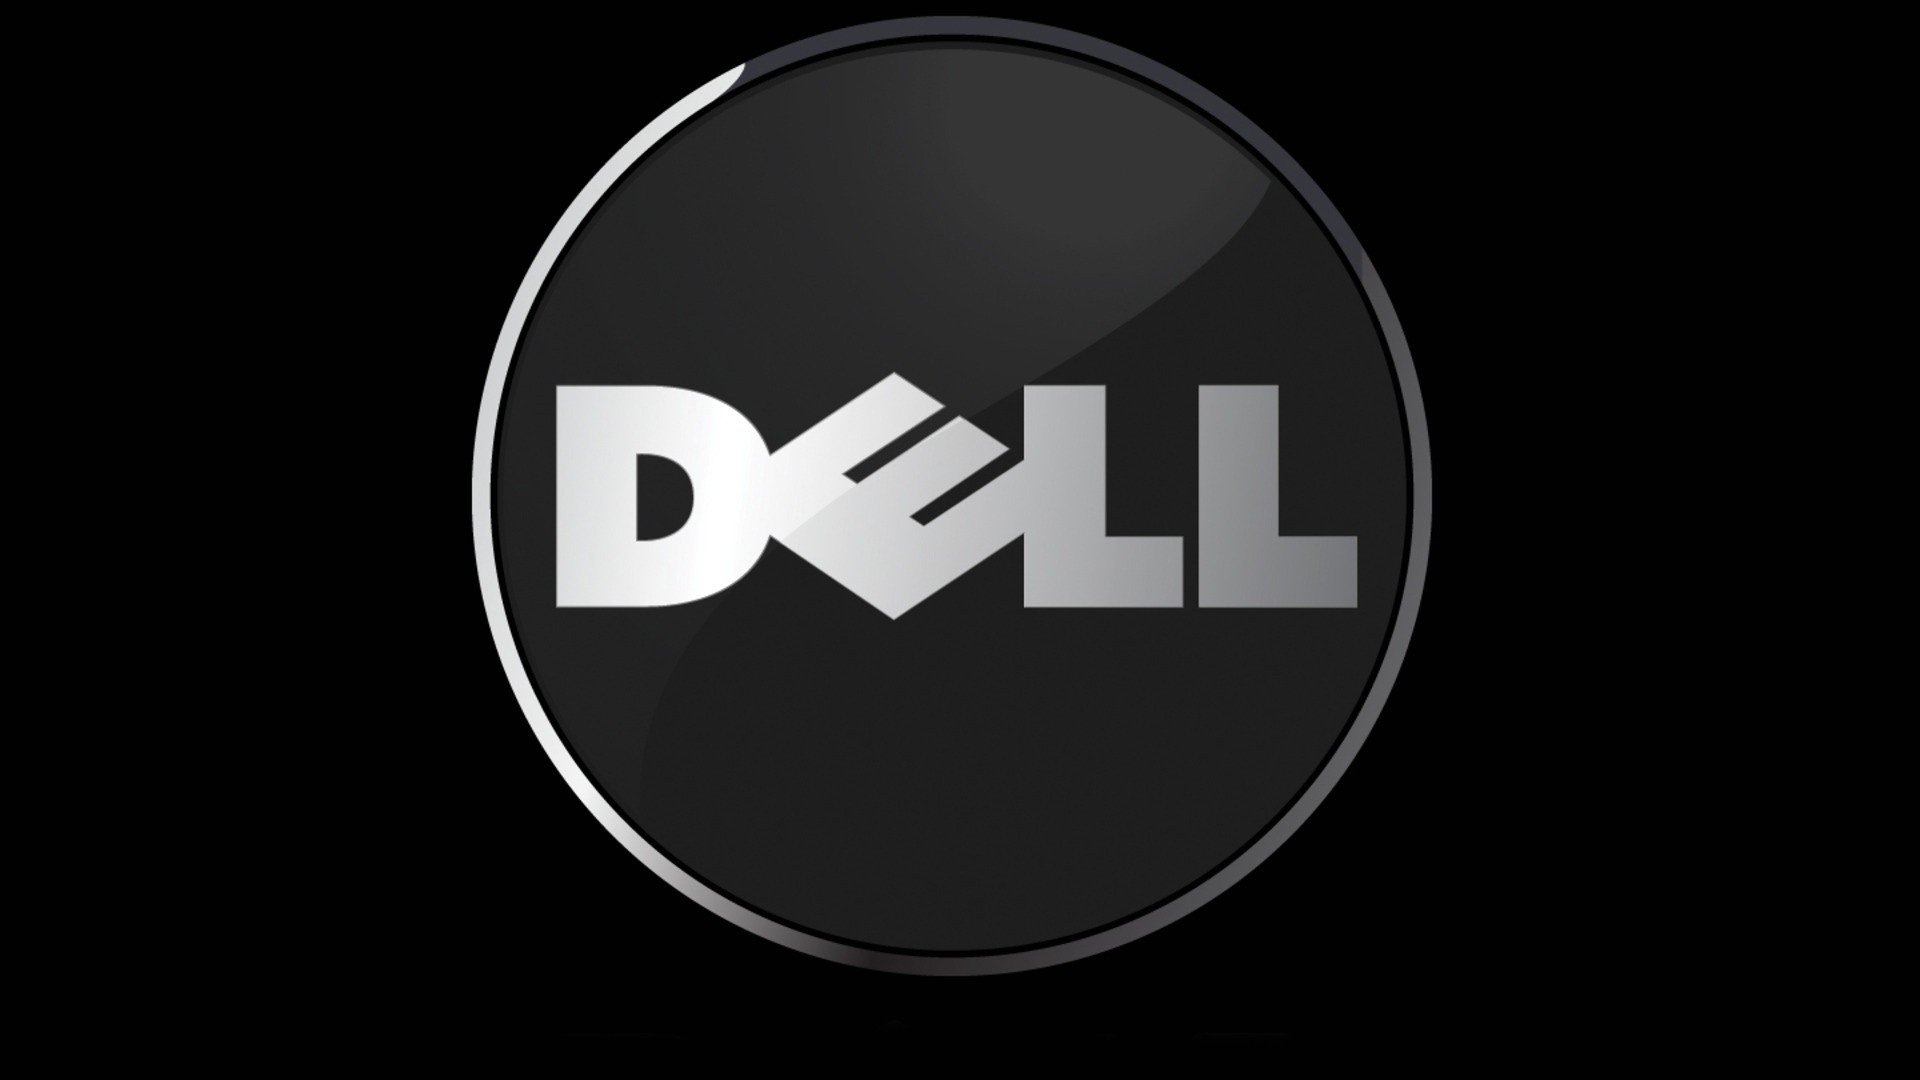 Dell, Computer, Hardware Wallpaper